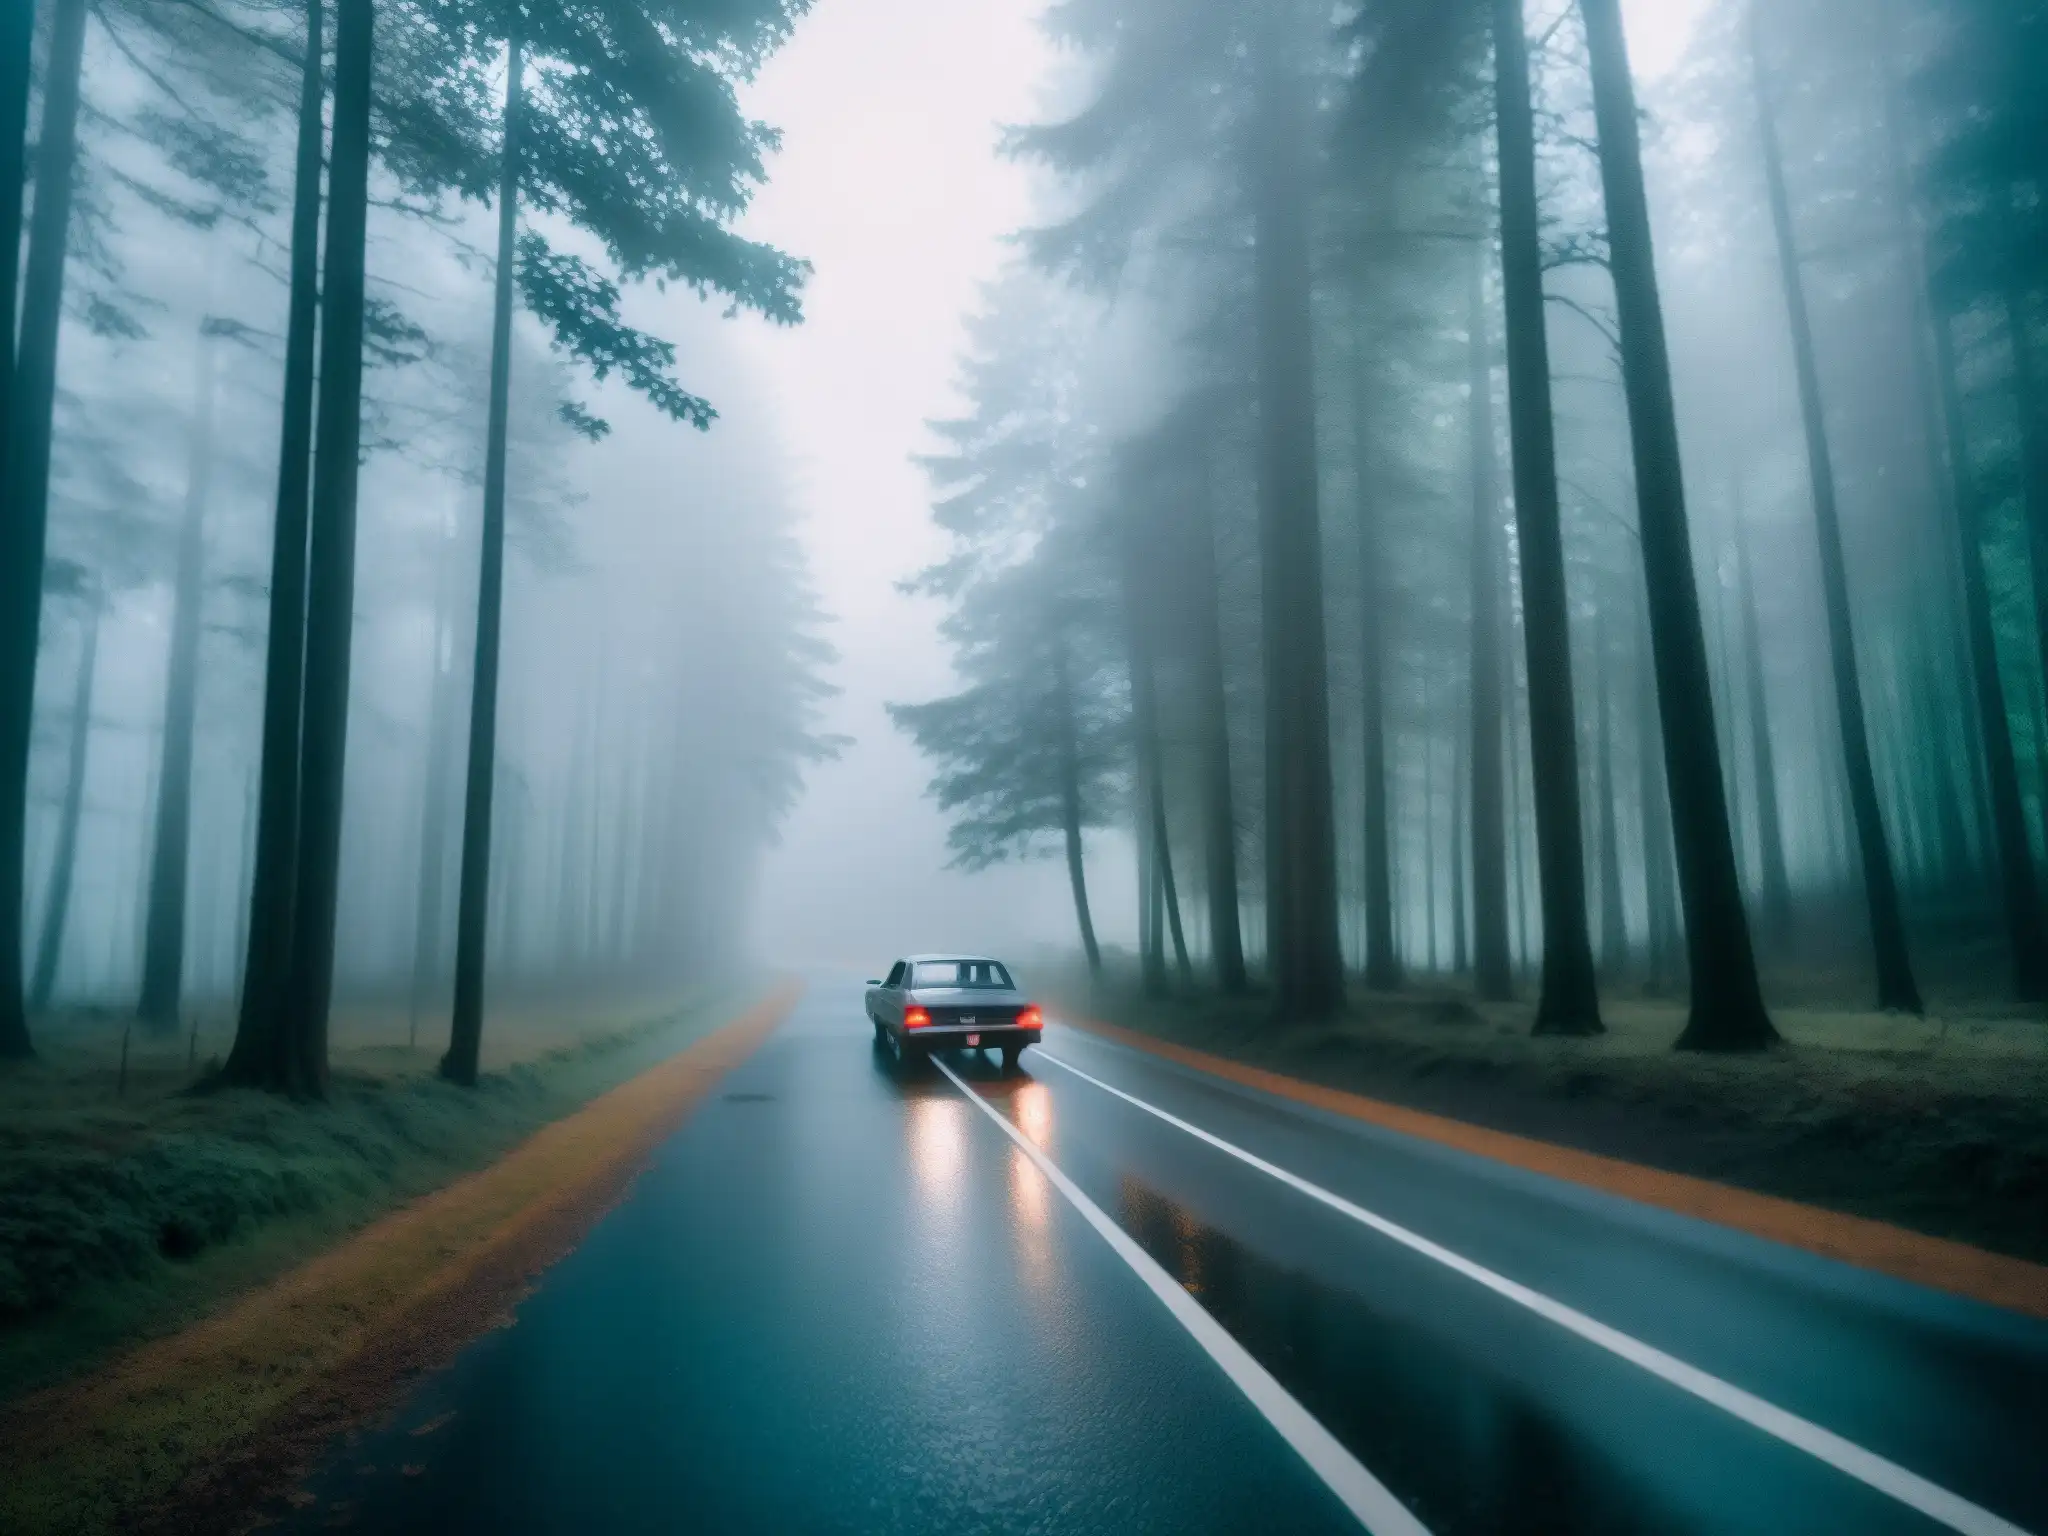 Una carretera misteriosa en Taiwán con apariciones fantasmales y un coche abandonado